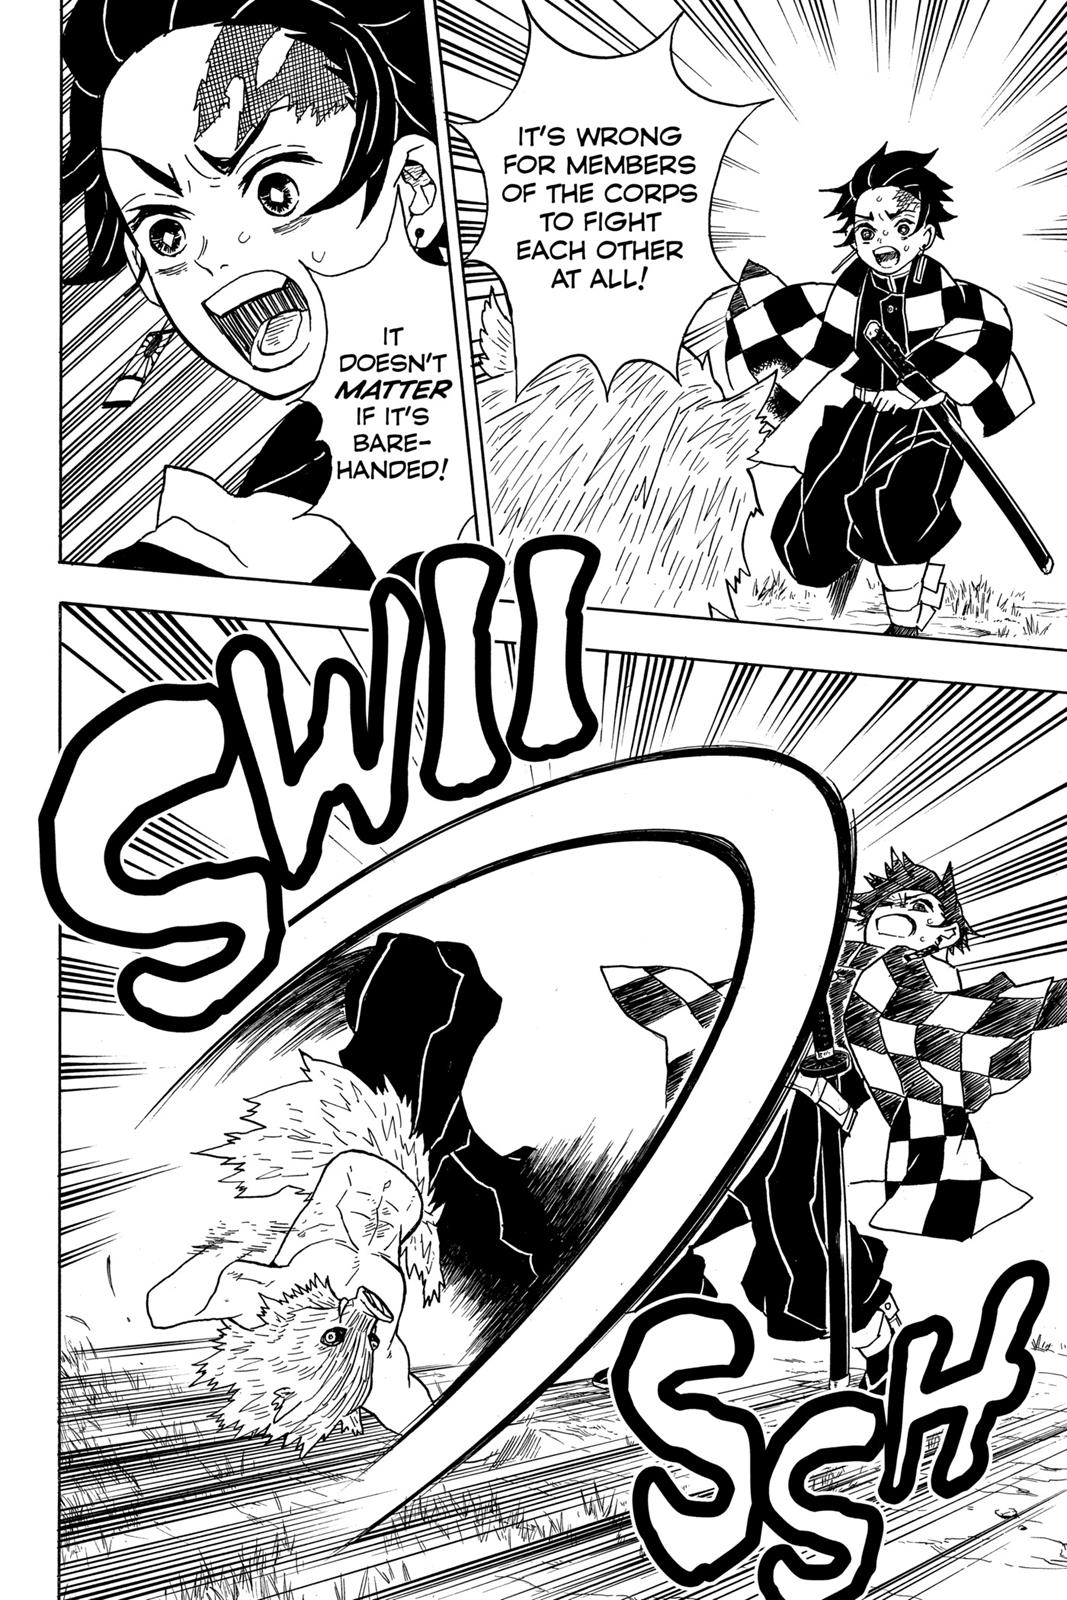 Demon Slayer Manga Manga Chapter - 26 - image 18